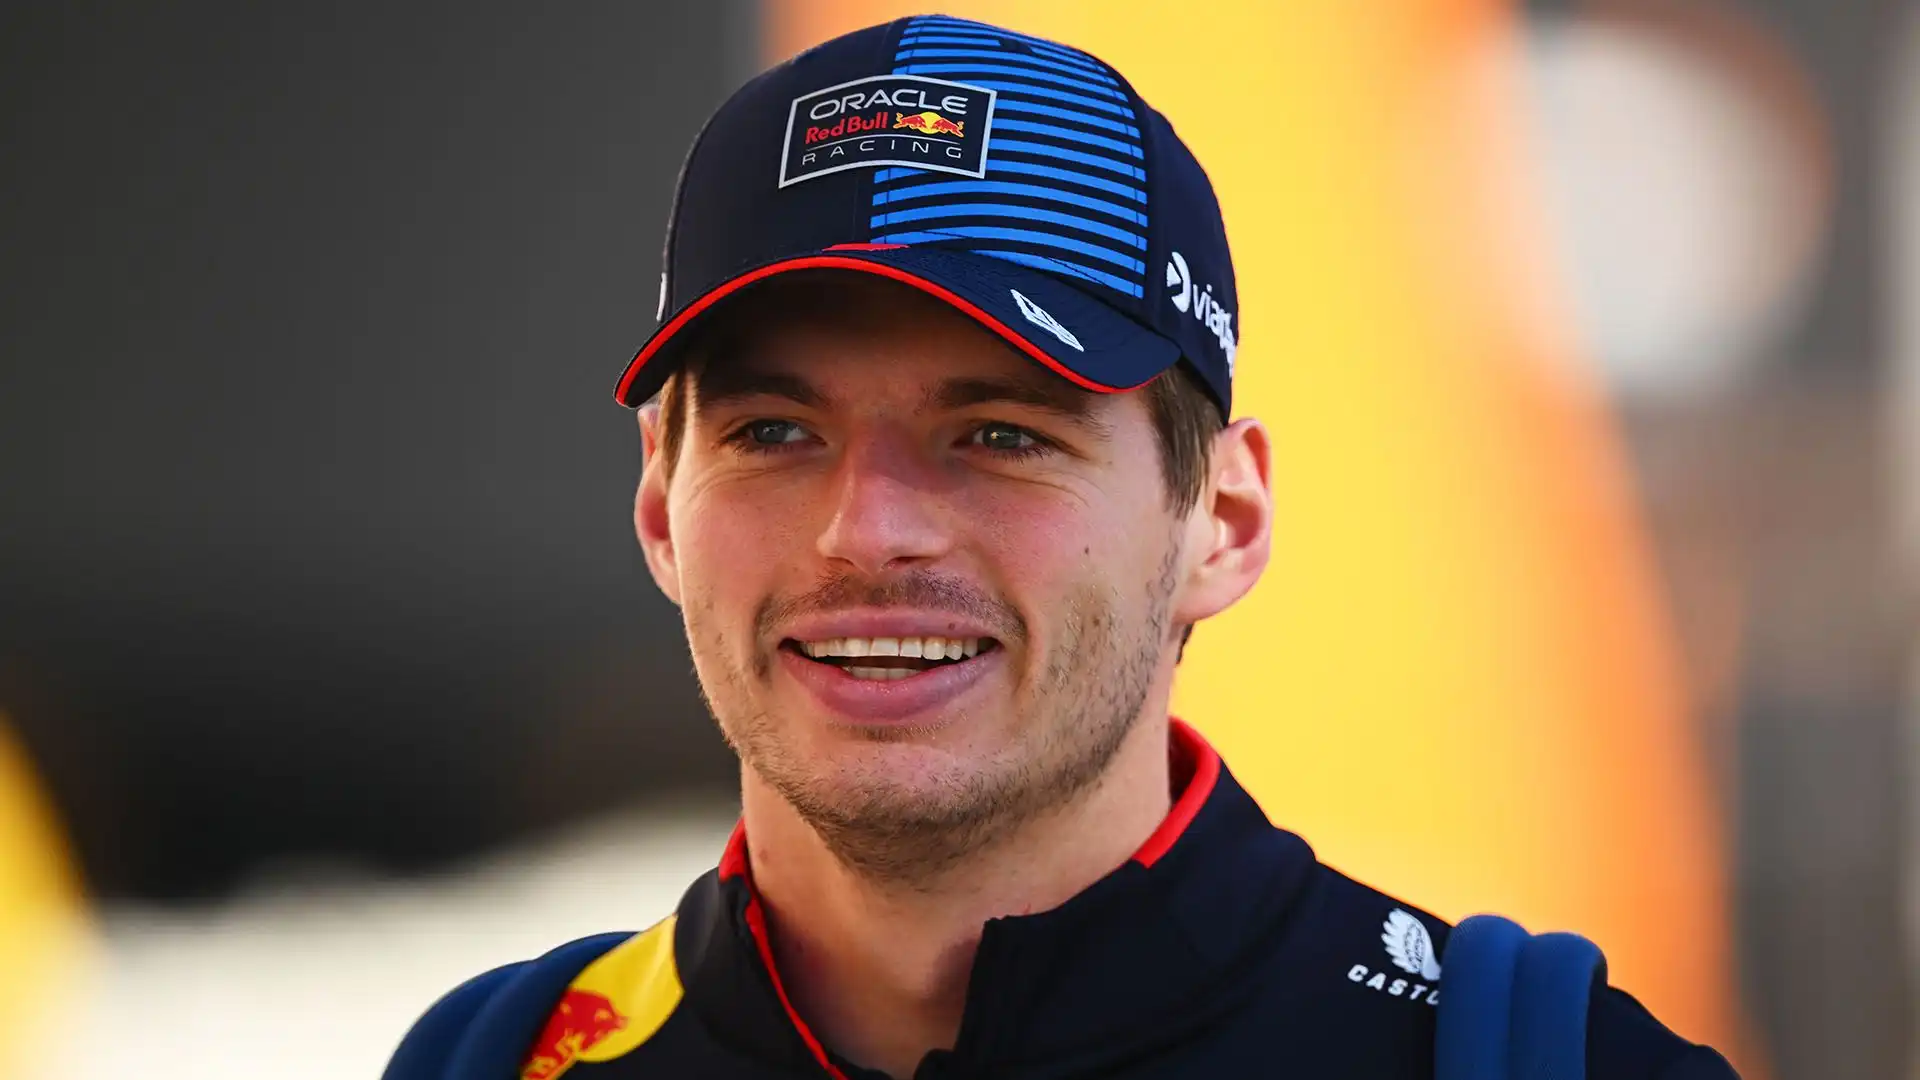 Max Verstappen subito protagonista nei primi test della Formula 1